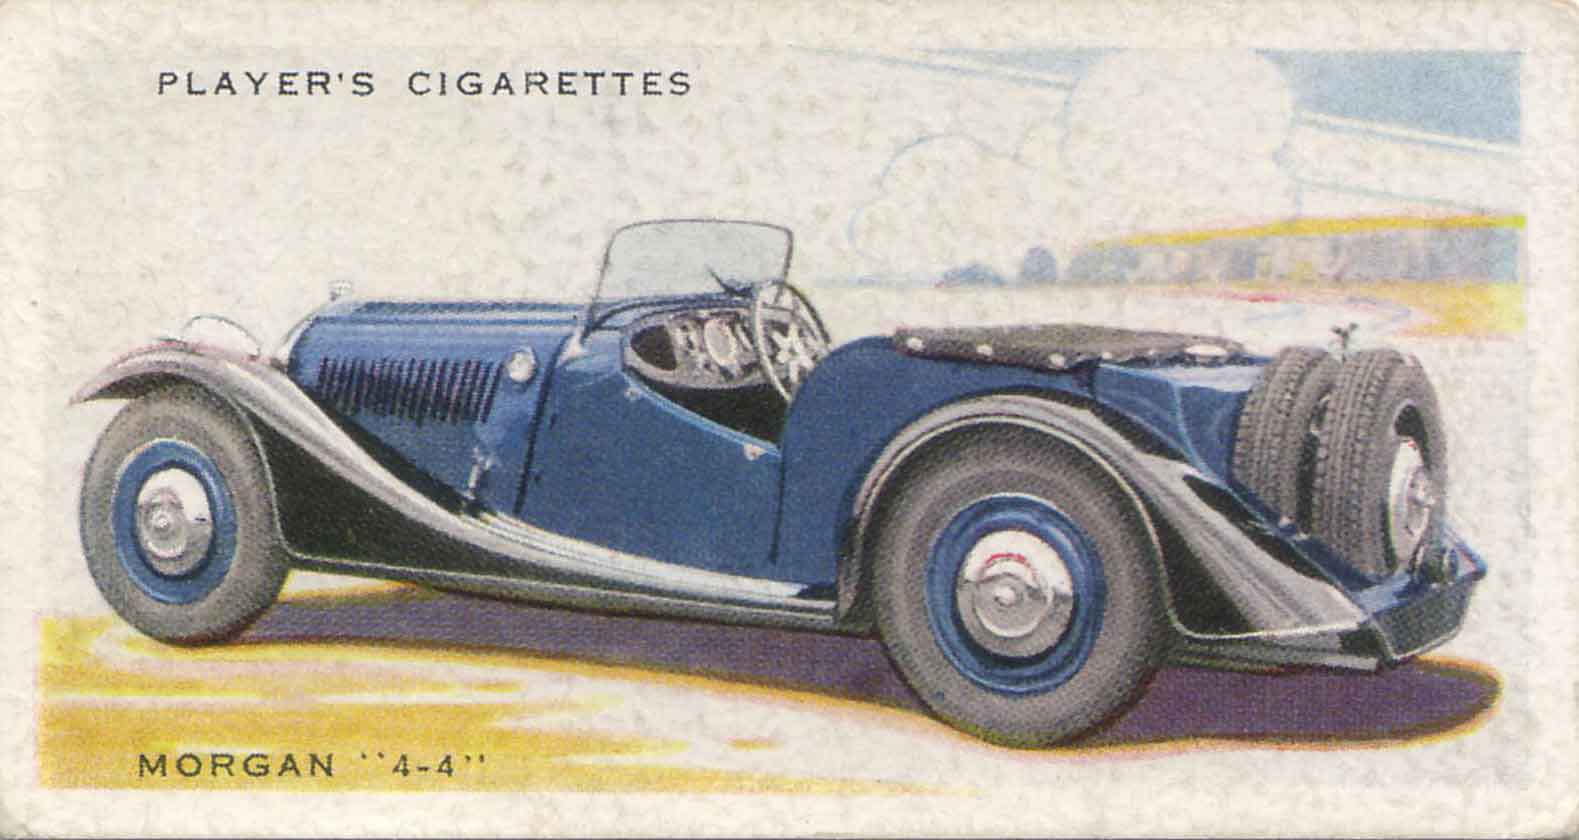 Morgan 4-4. 1937 cigarette card.